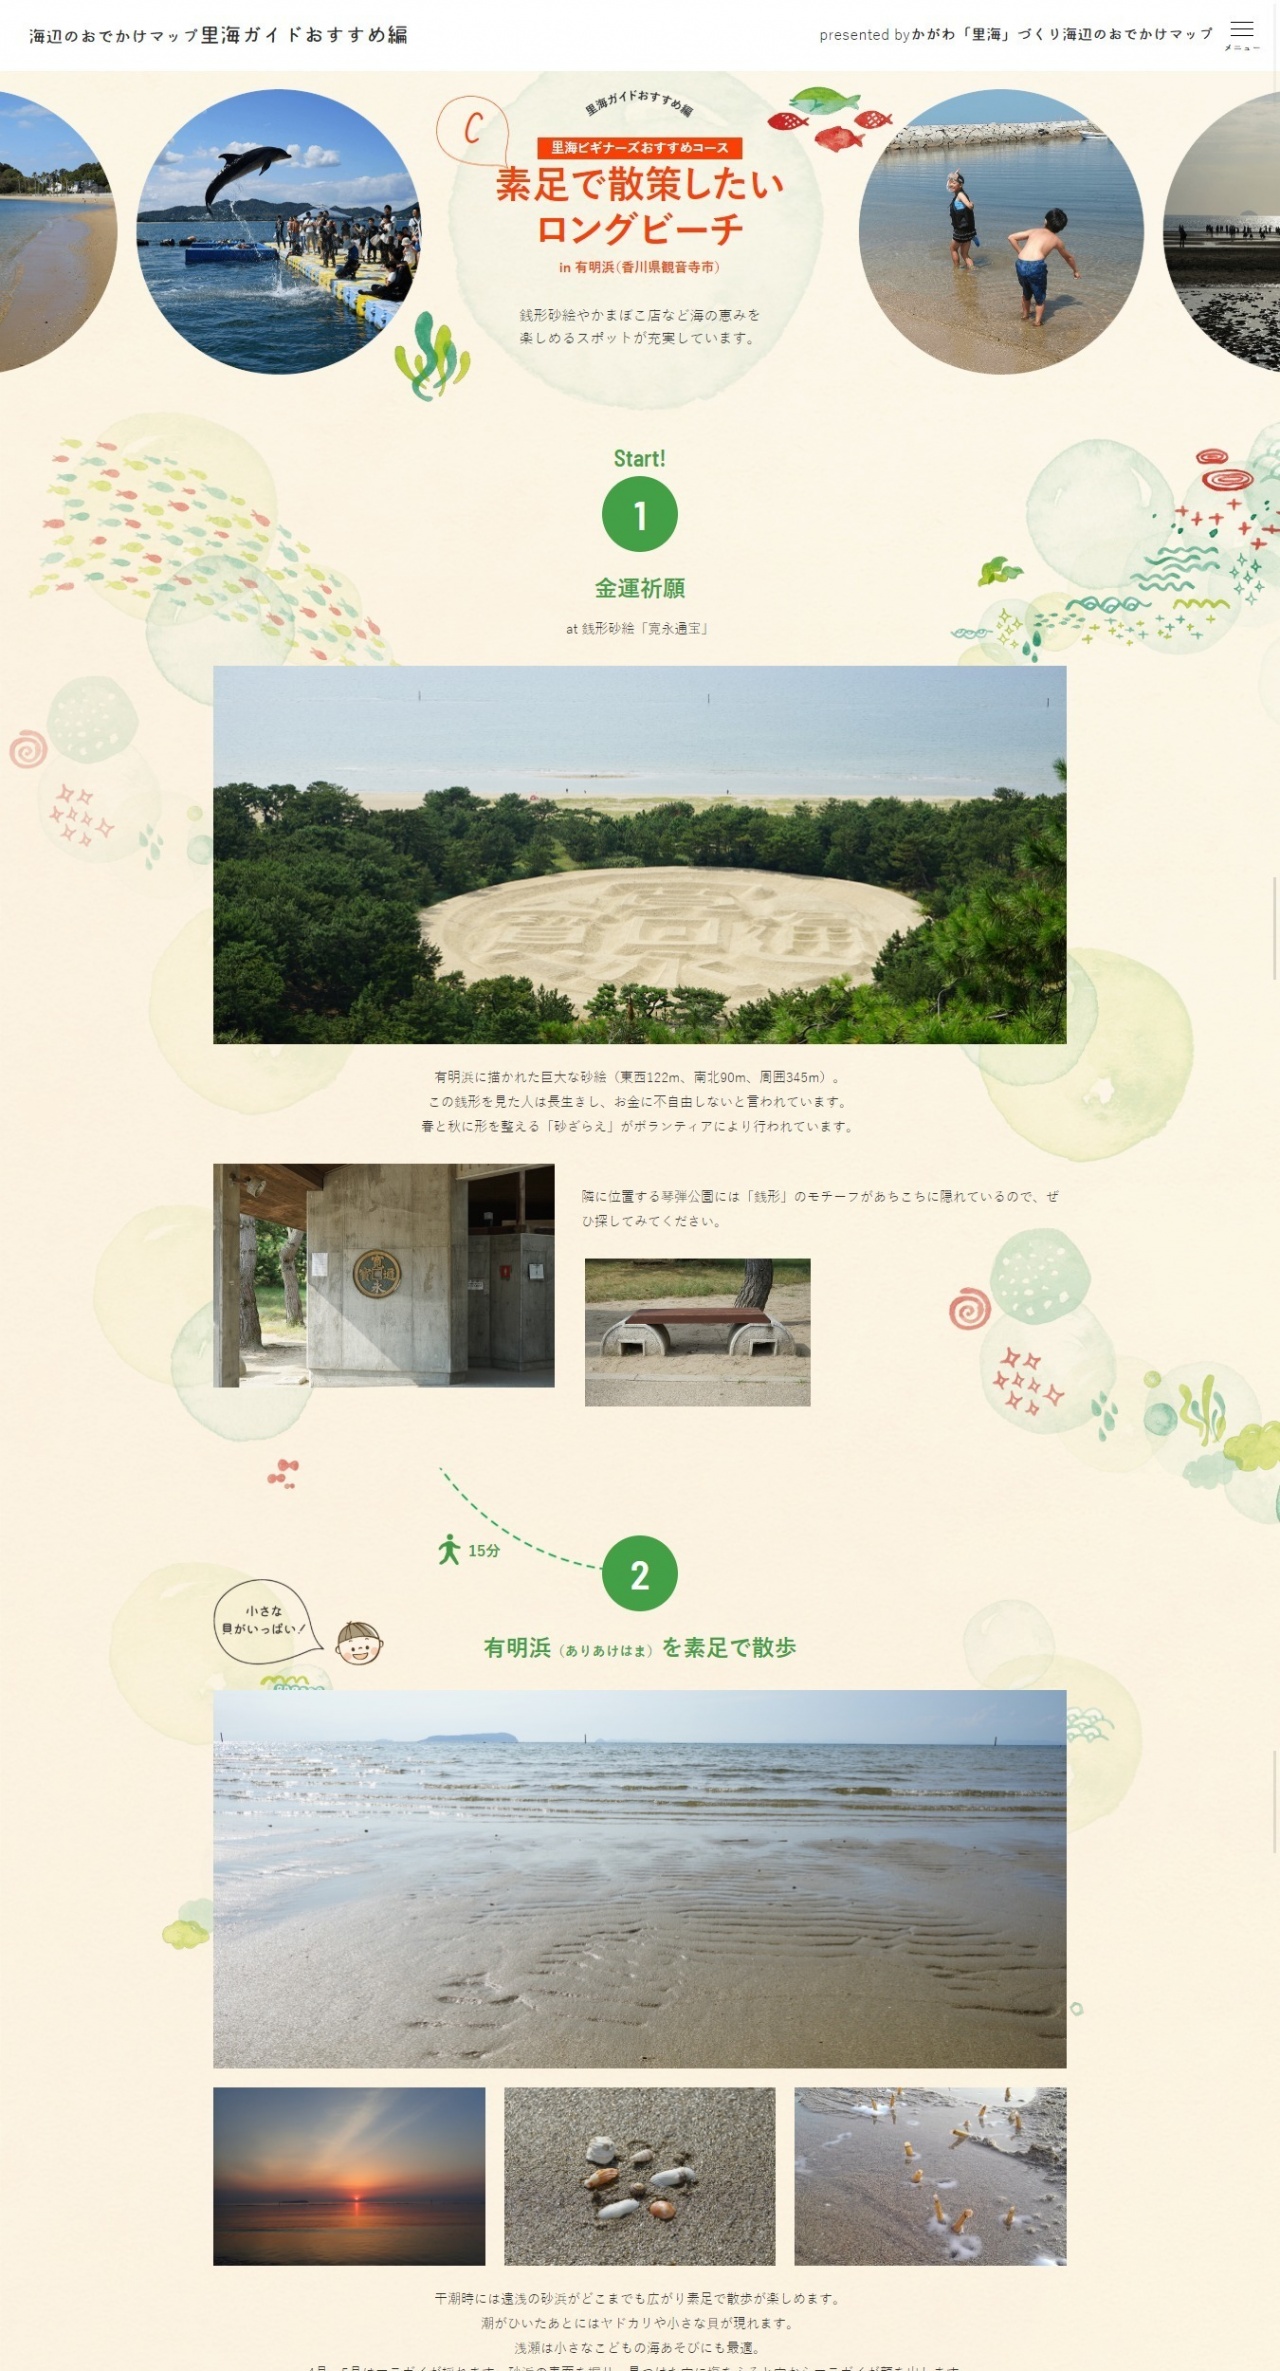 香川県様 海辺のおでかけマップ 制作実績 香川県高松市でホームページ Web制作なら株式会社ゴーフィールド